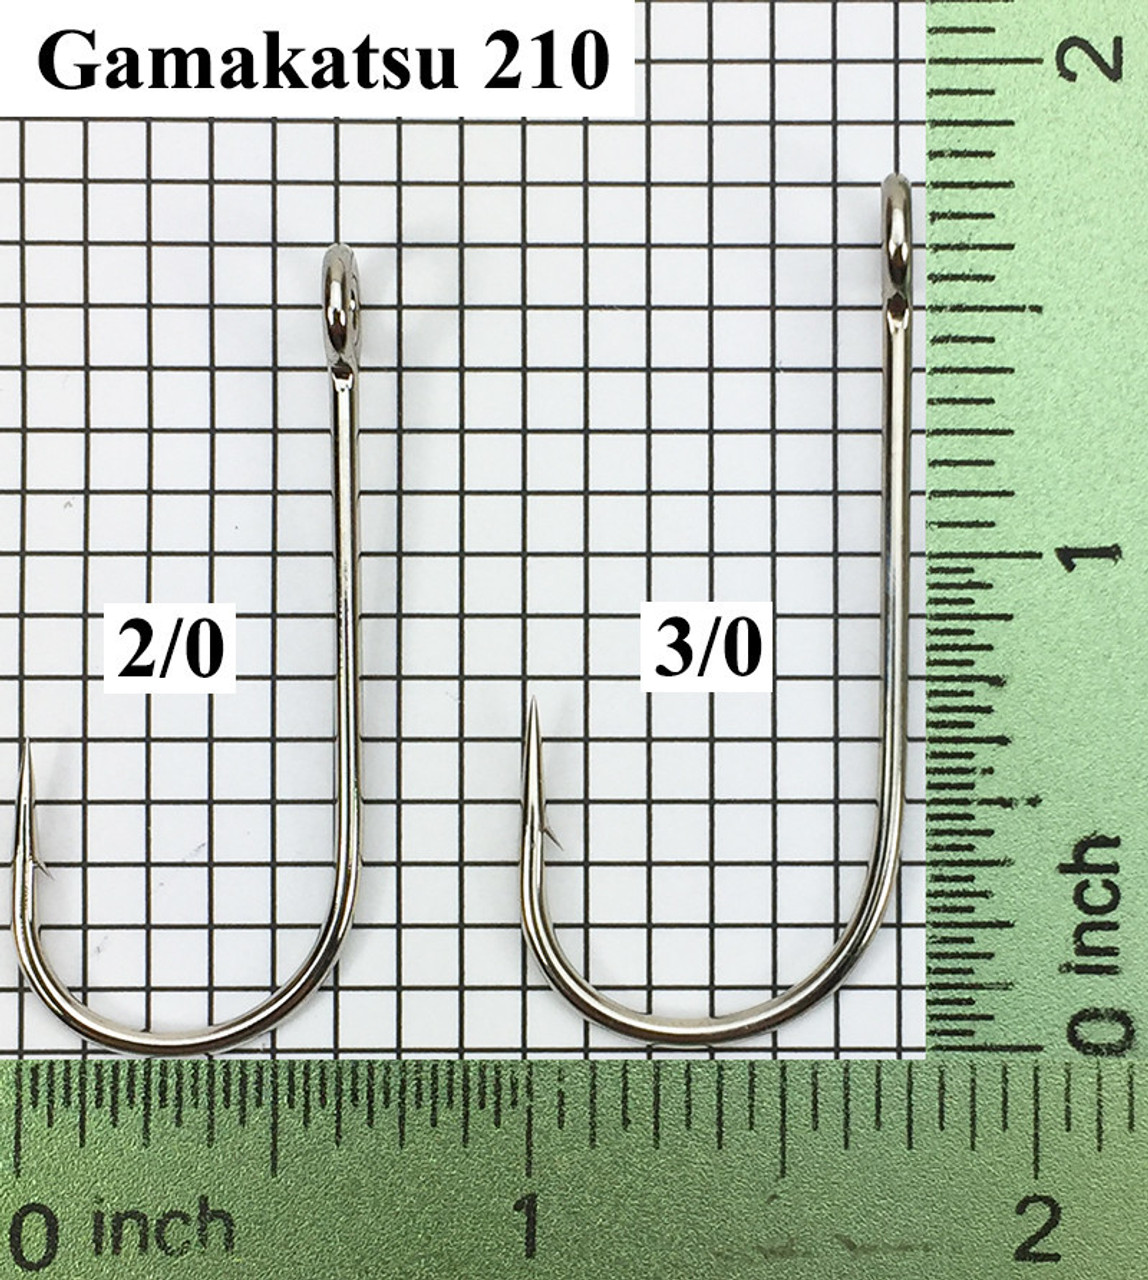 Gamakatsu 210 Trailer Hook Sizes 2/0-3/0 - Barlow's Tackle